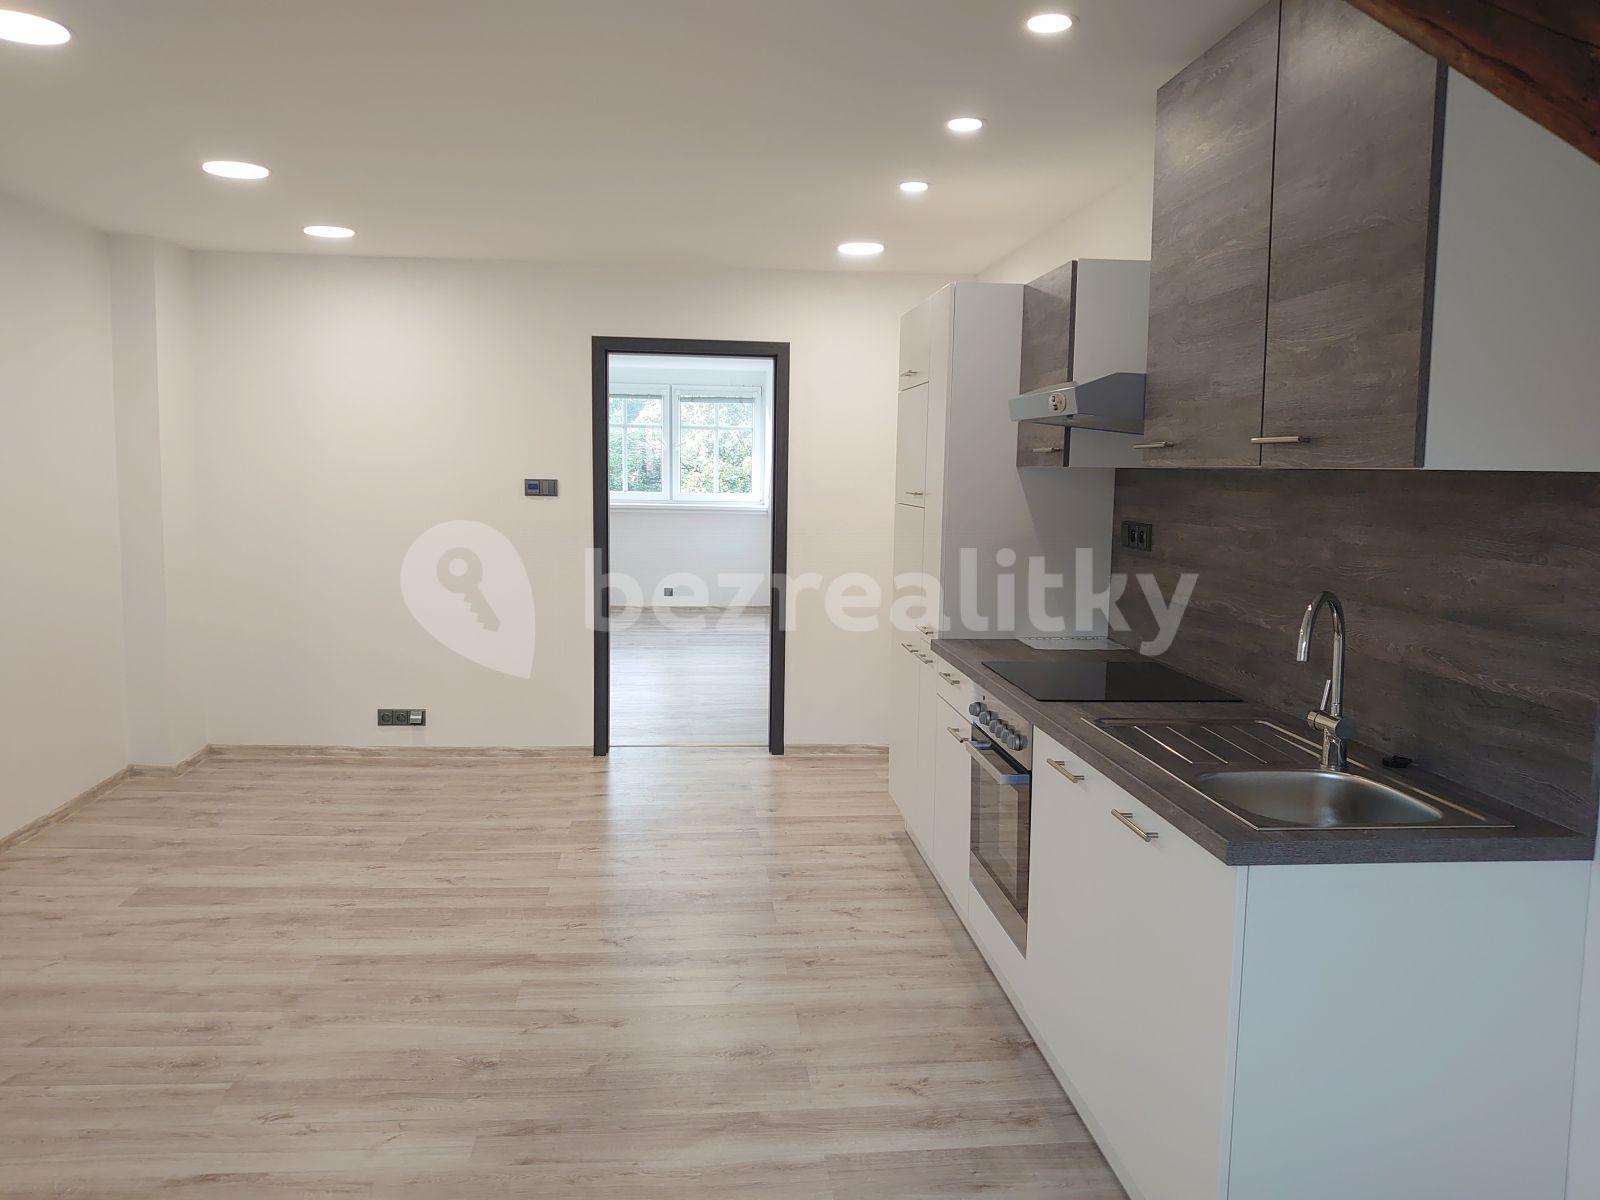 1 bedroom with open-plan kitchen flat to rent, 53 m², Nákladní, Karlovy Vary, Karlovarský Region